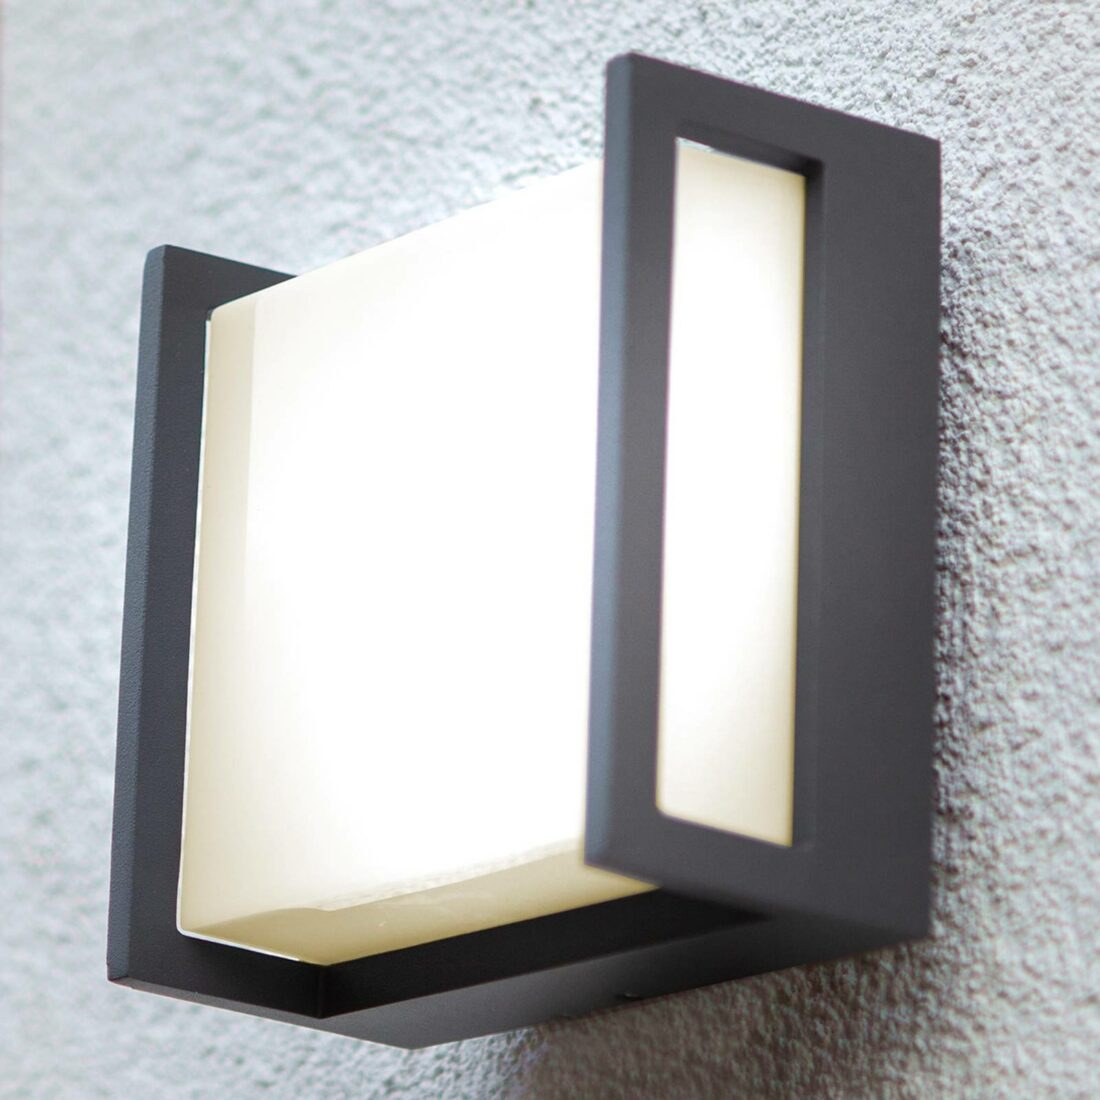 Venkovní nástěnné LED svítidlo Qubo 14cm x 14cm